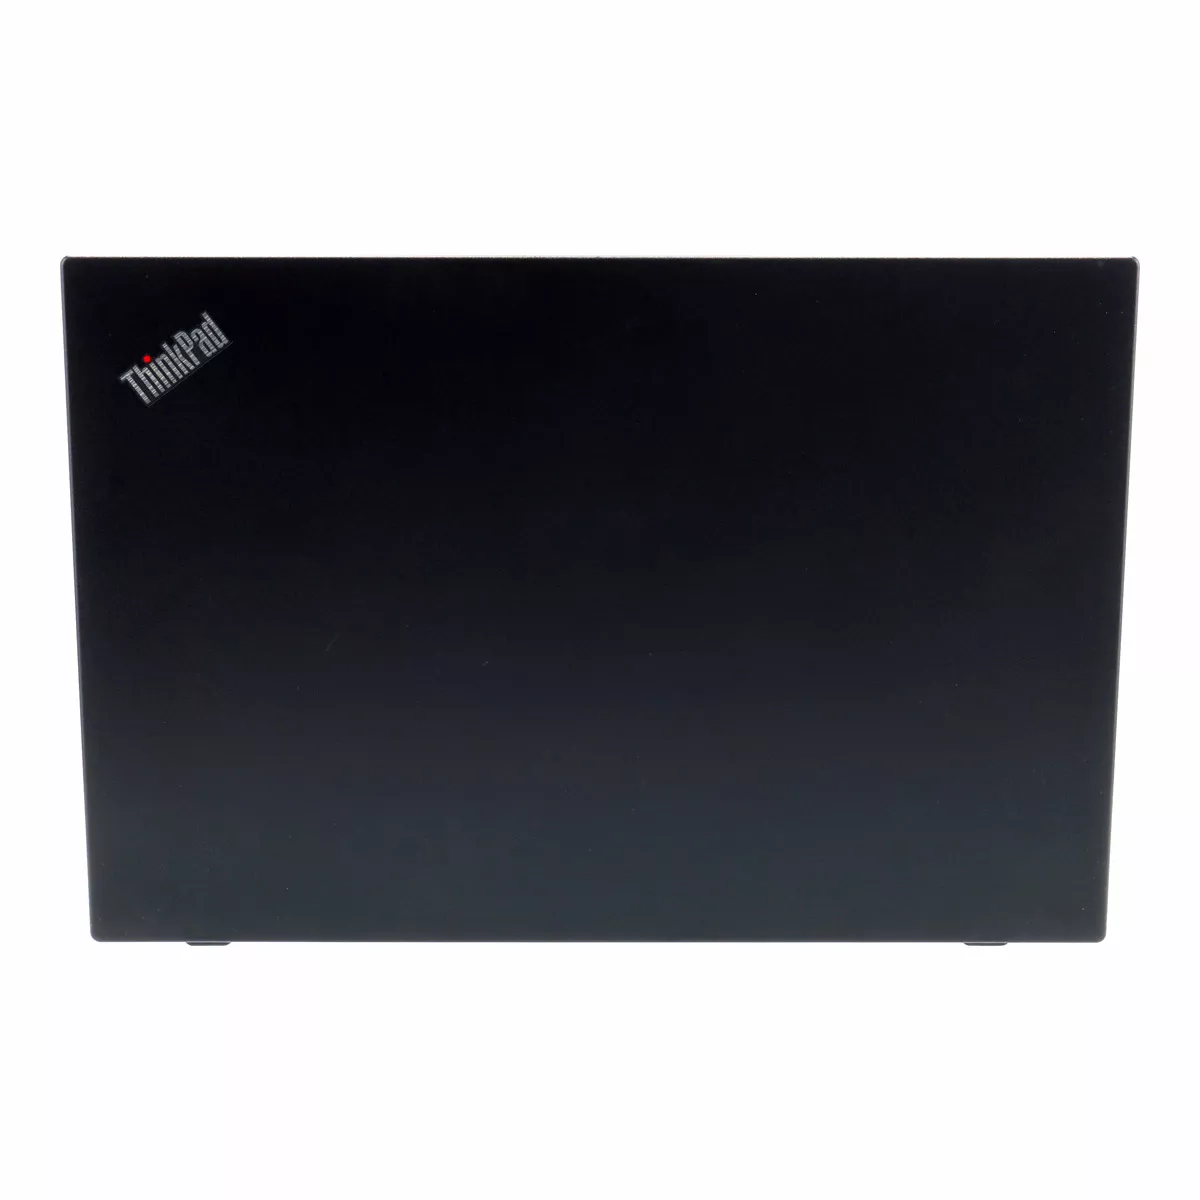 Lenovo ThinkPad L590 Core i5 8265U 16 GB 240 GB M.2 nVME SSD Webcam A+